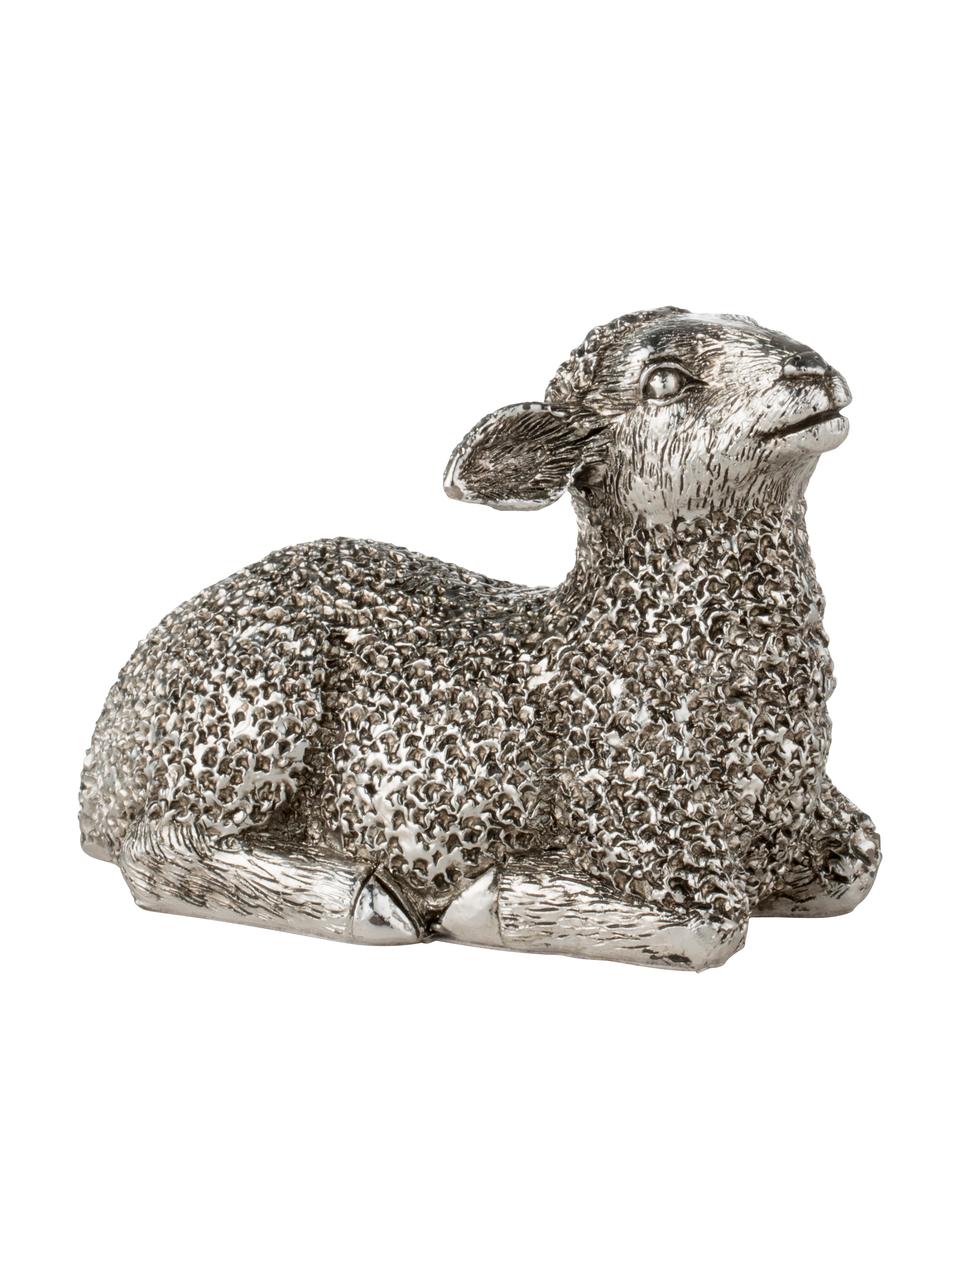 Dekoracja Lamb, Tworzywo sztuczne, Odcienie srebrnego, S 9 x W 6 cm